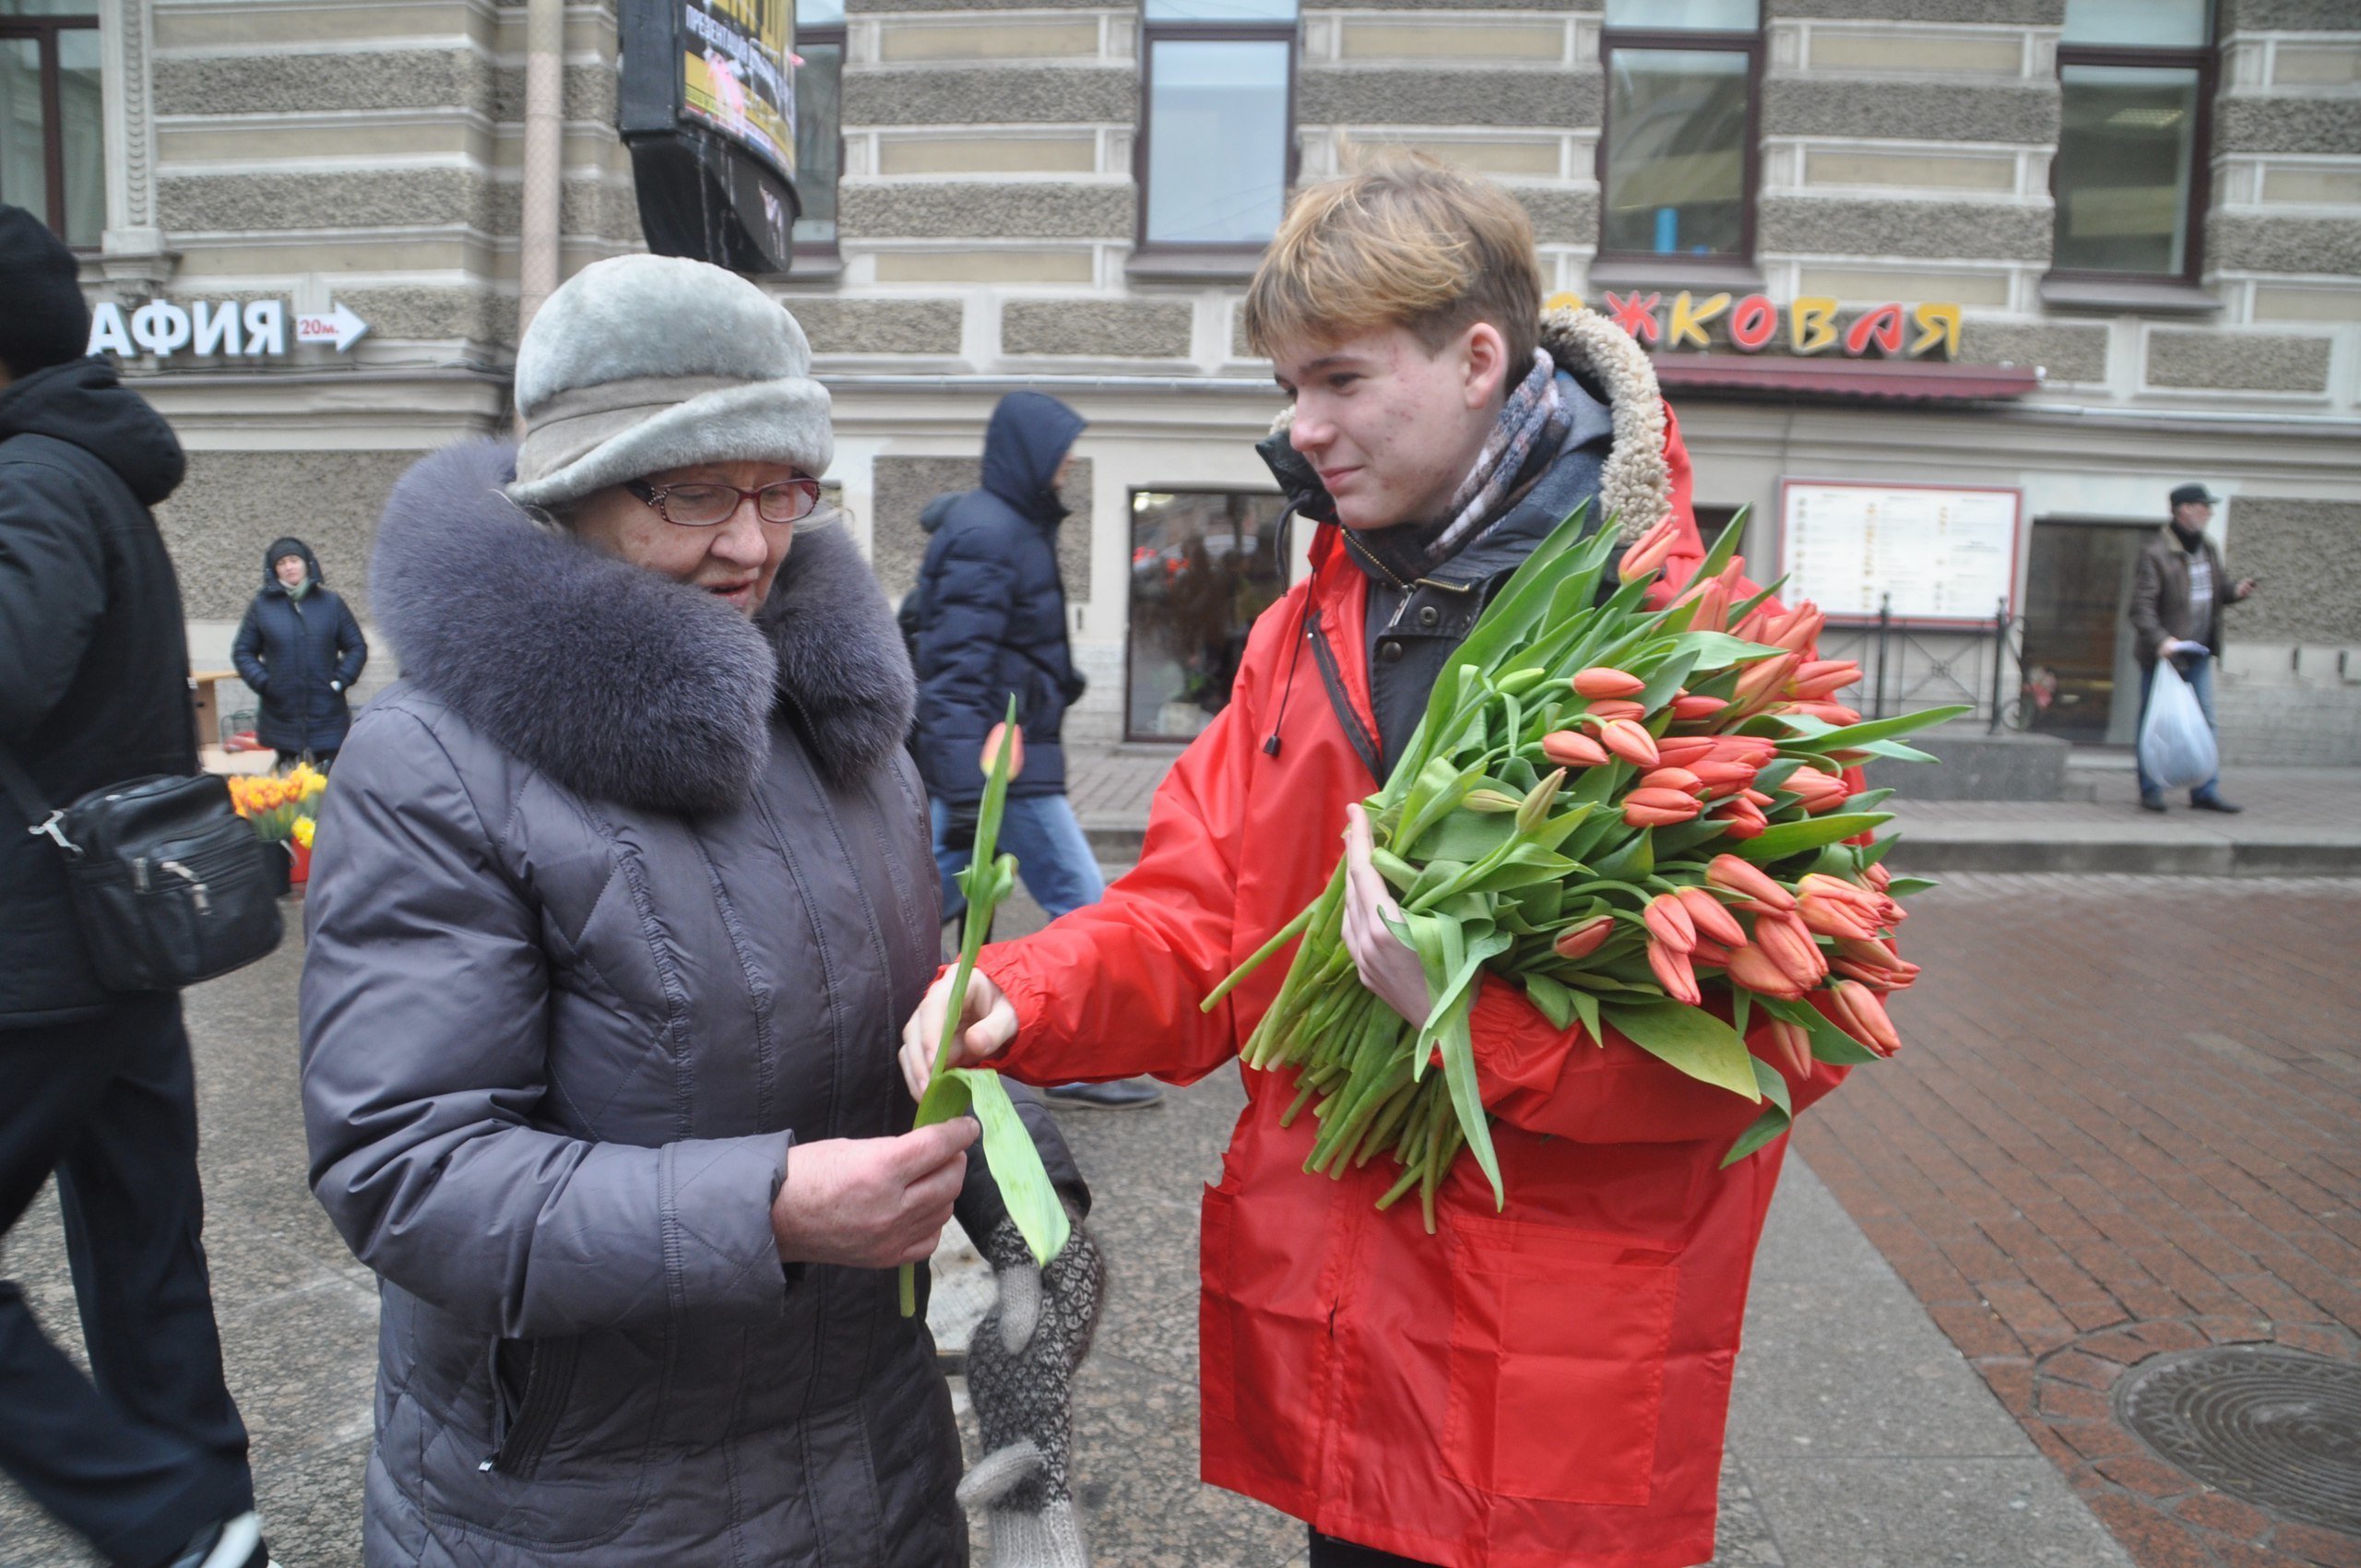 Международный женский день мужчин. Дарят цветы на улице.